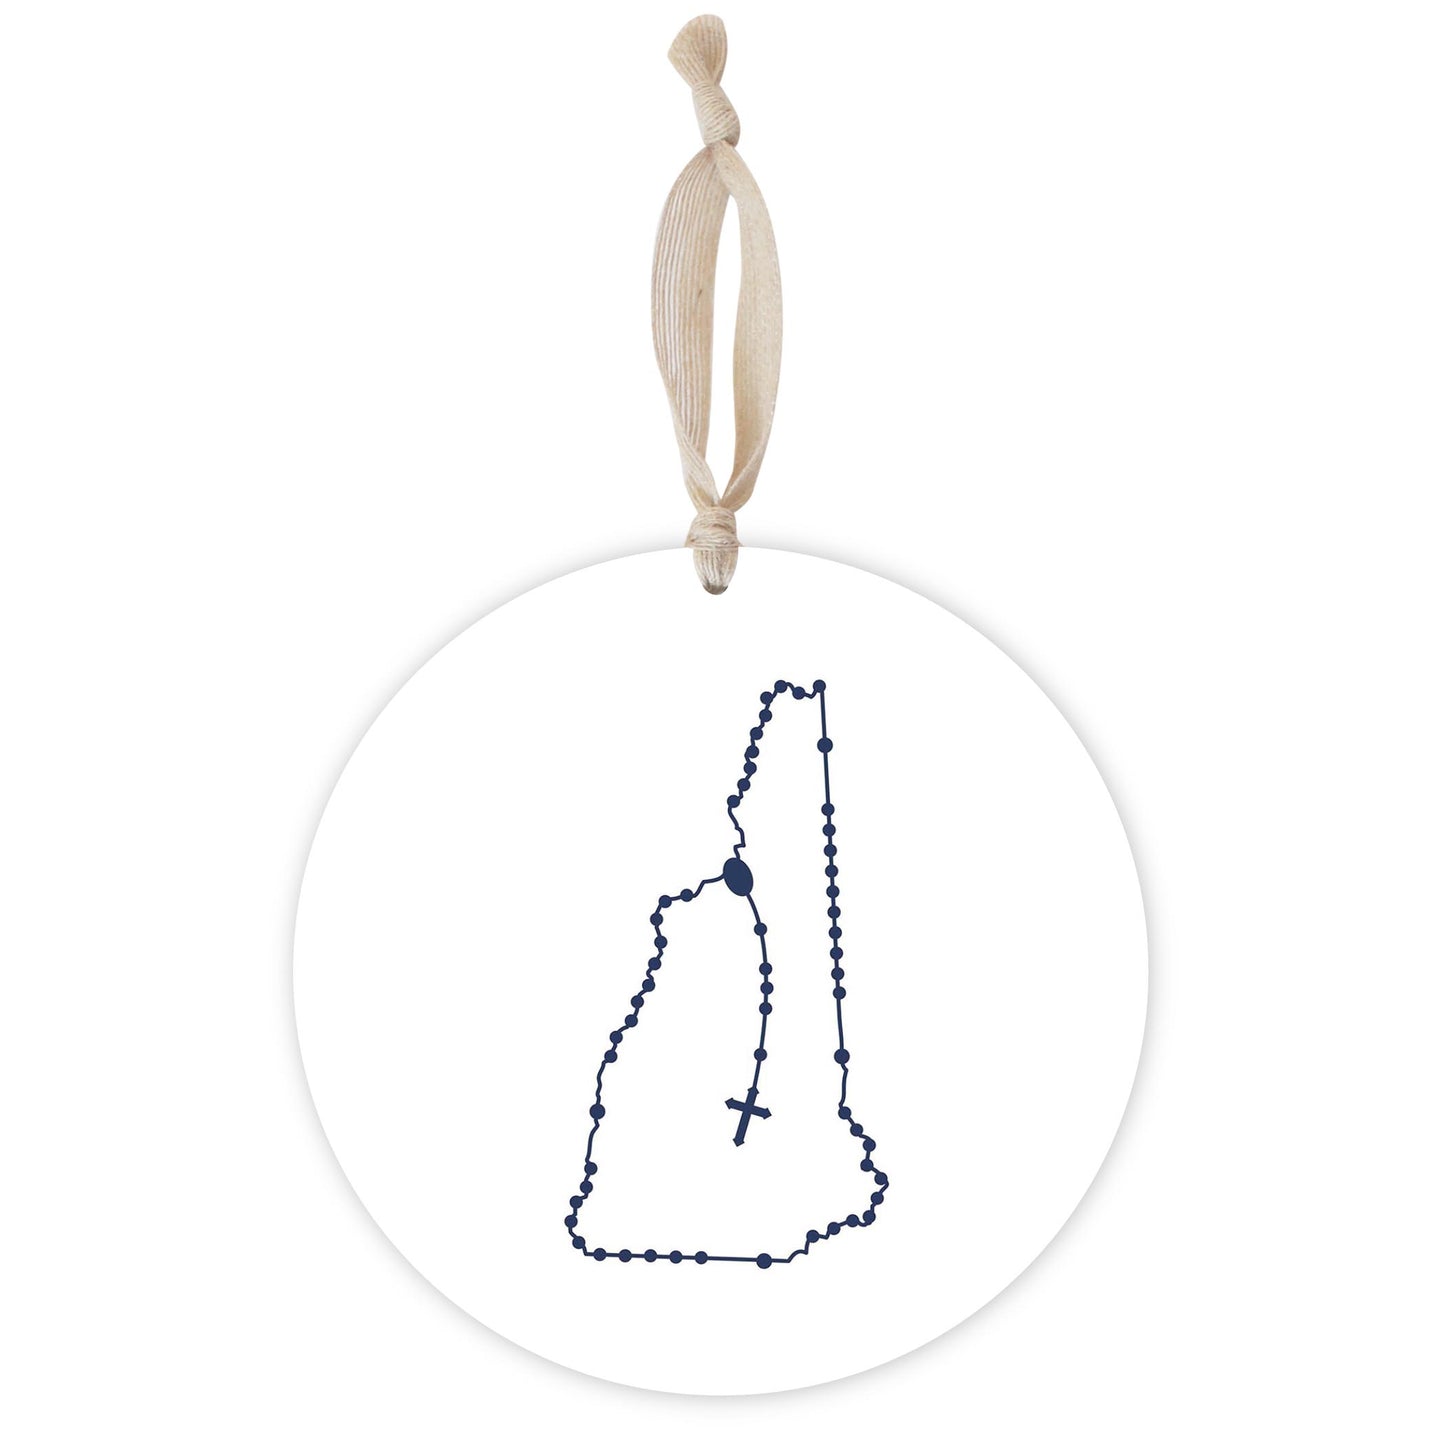 New Hampshire Catholic Rosary Large Ornament/Hanging Sign Round-8"x8" Blue